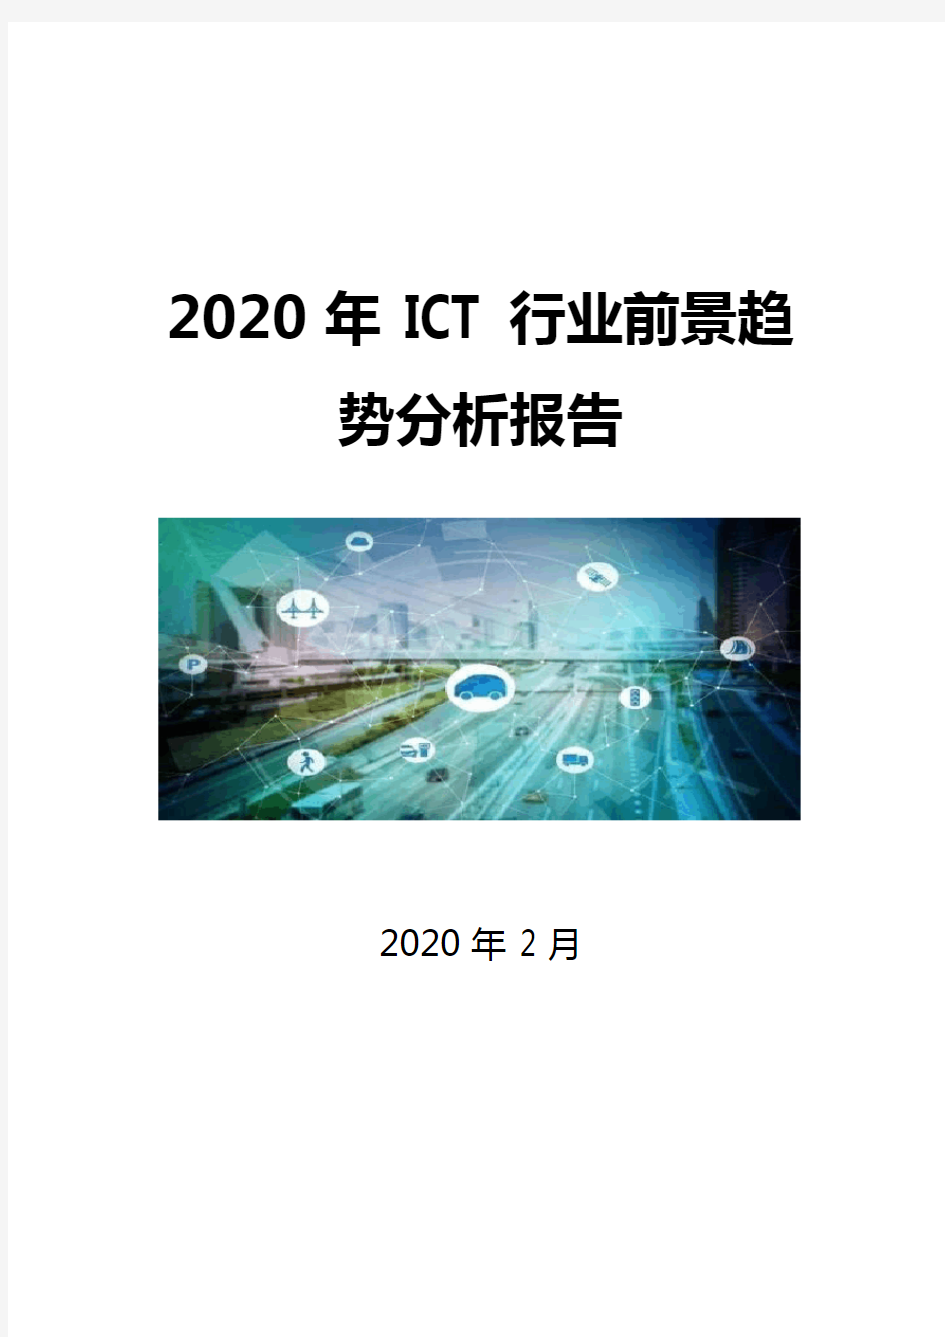 2020ICT行业前景趋势分析报告